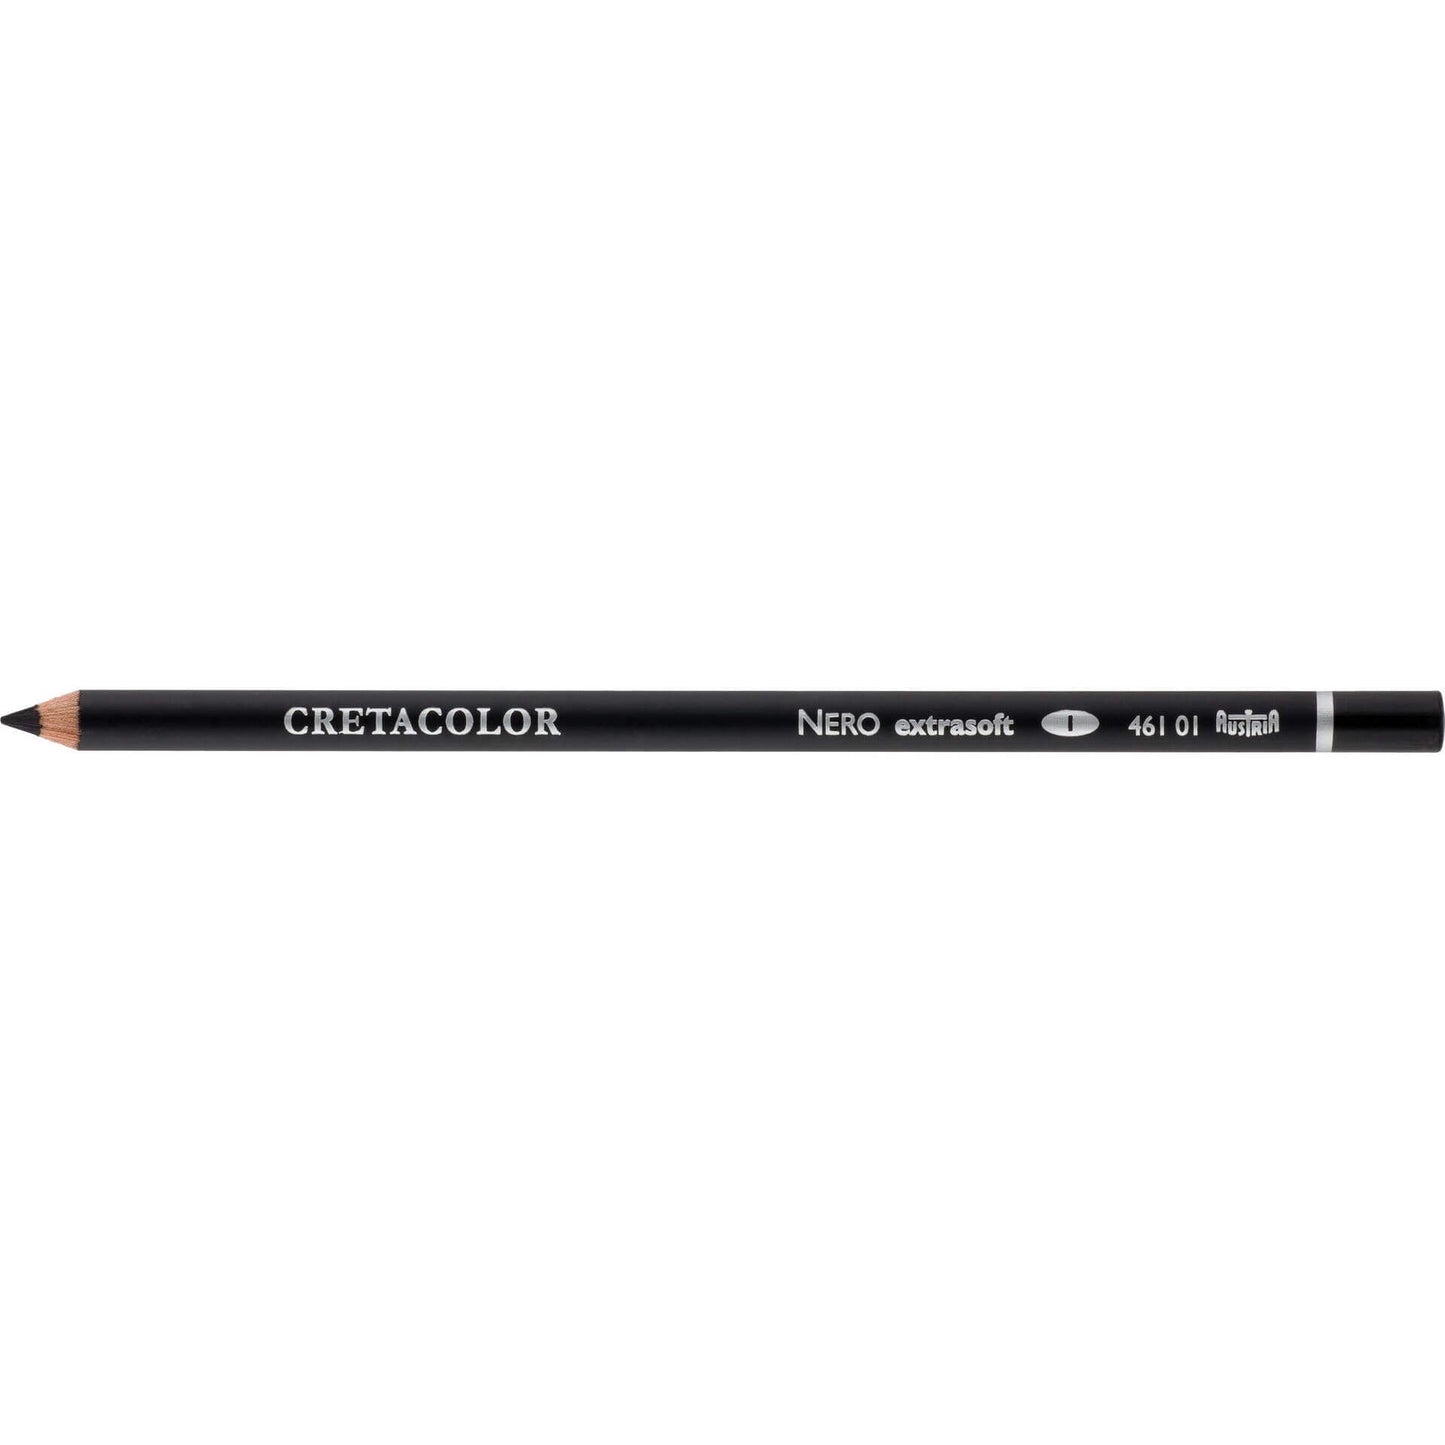 Cretacolor Nero Pencil - Extra Soft - by Cretacolor - K. A. Artist Shop